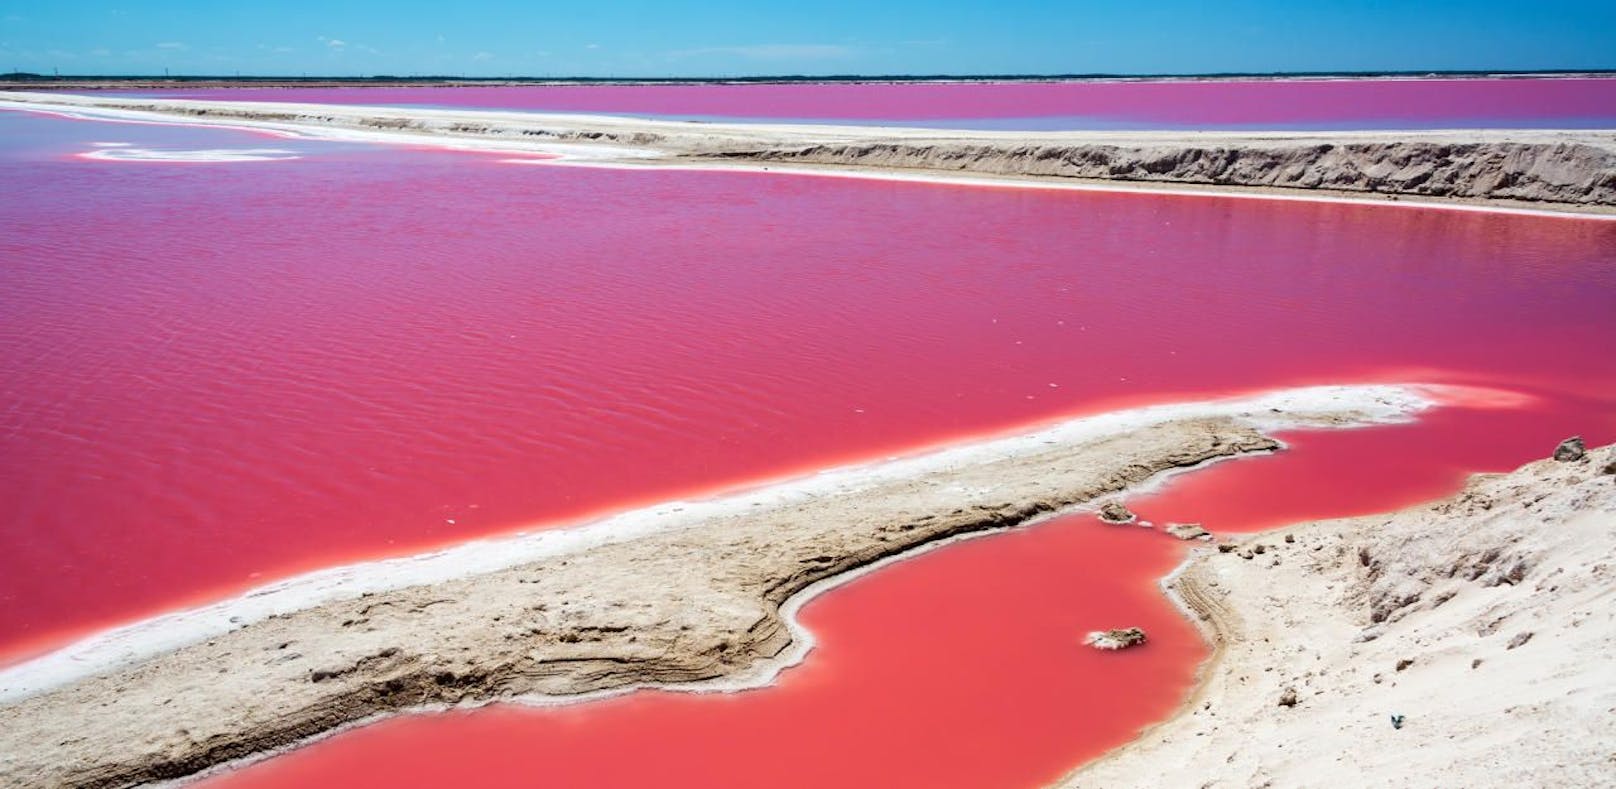 Aus diesem unglaublichen Grund ist dieser See rosa